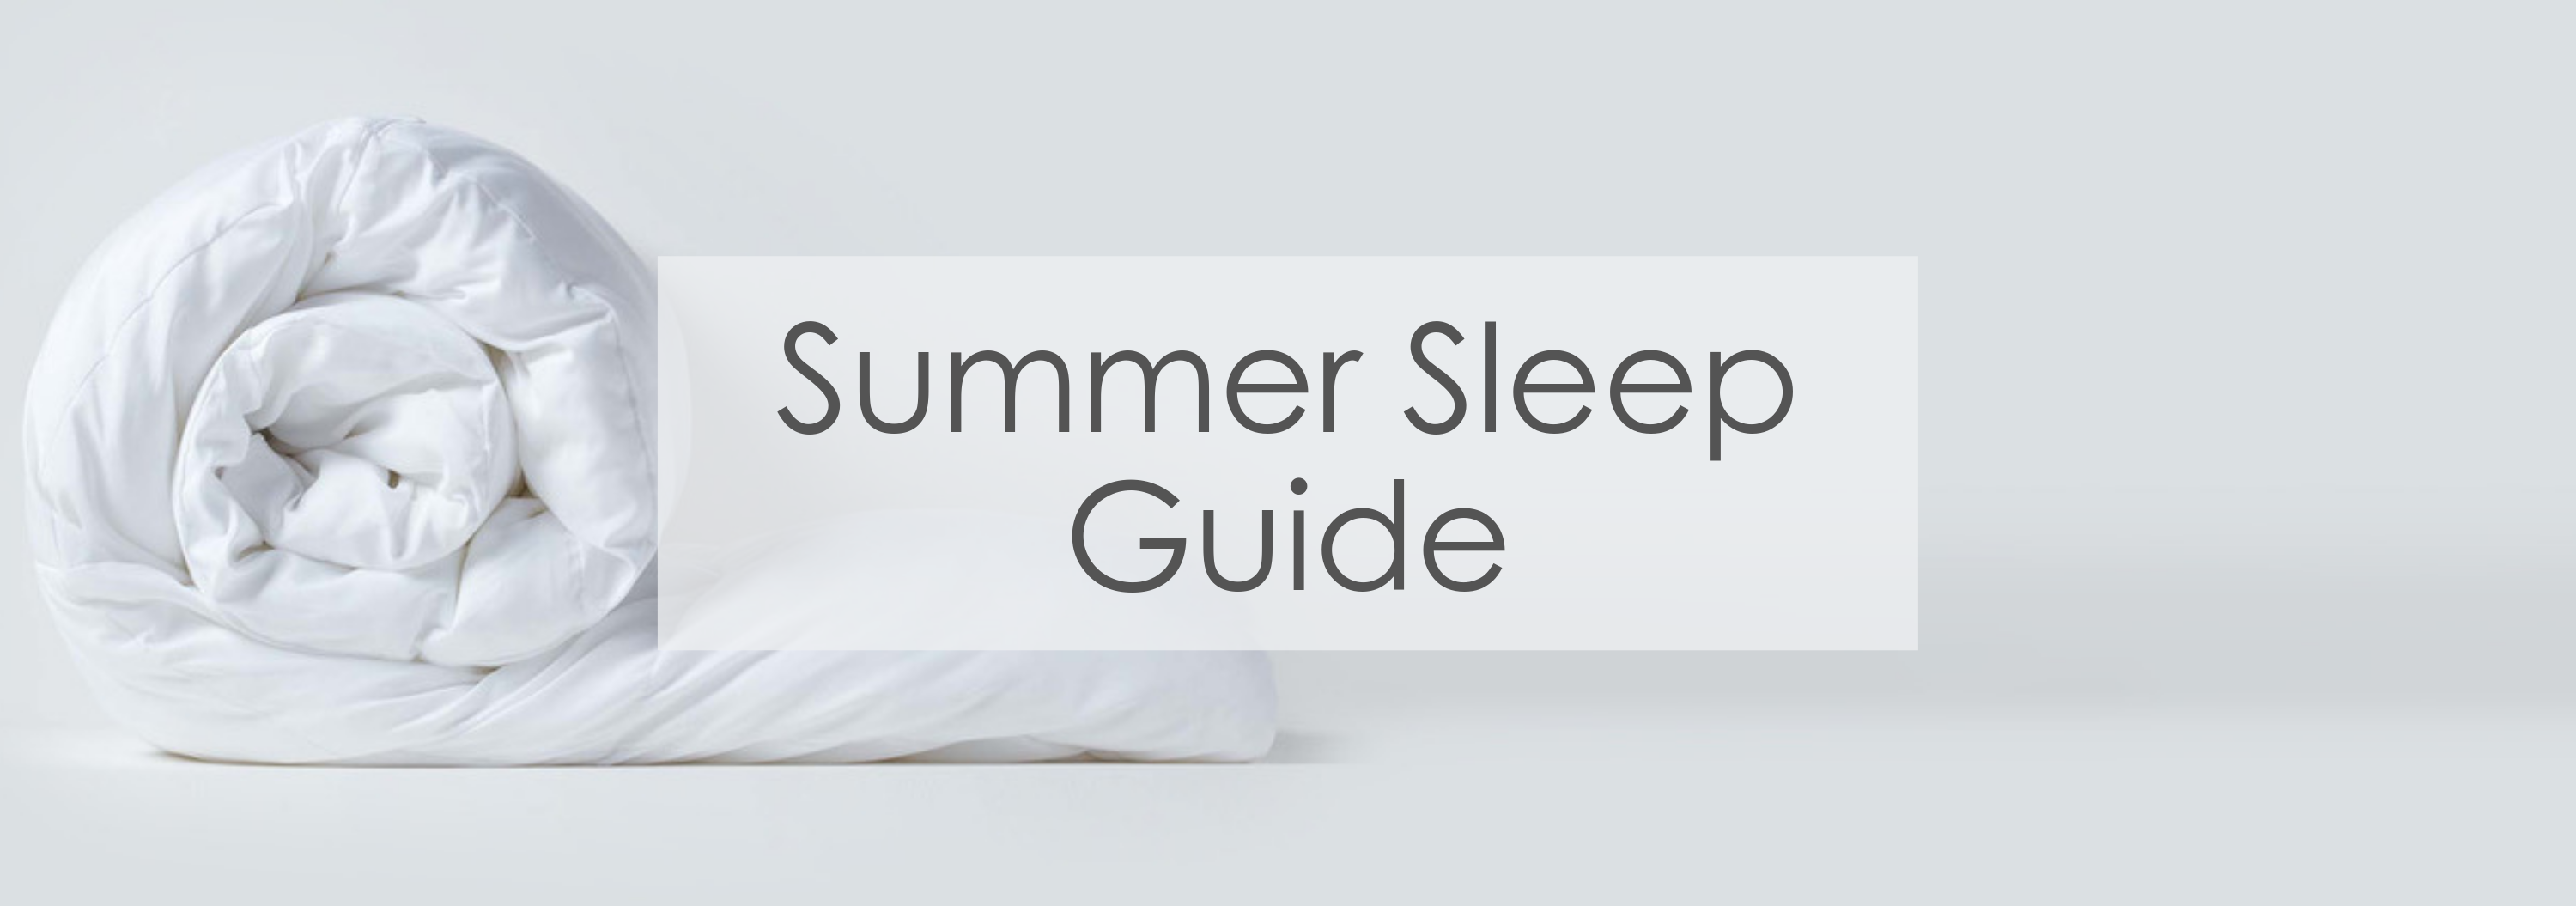 summer sleep guide banner